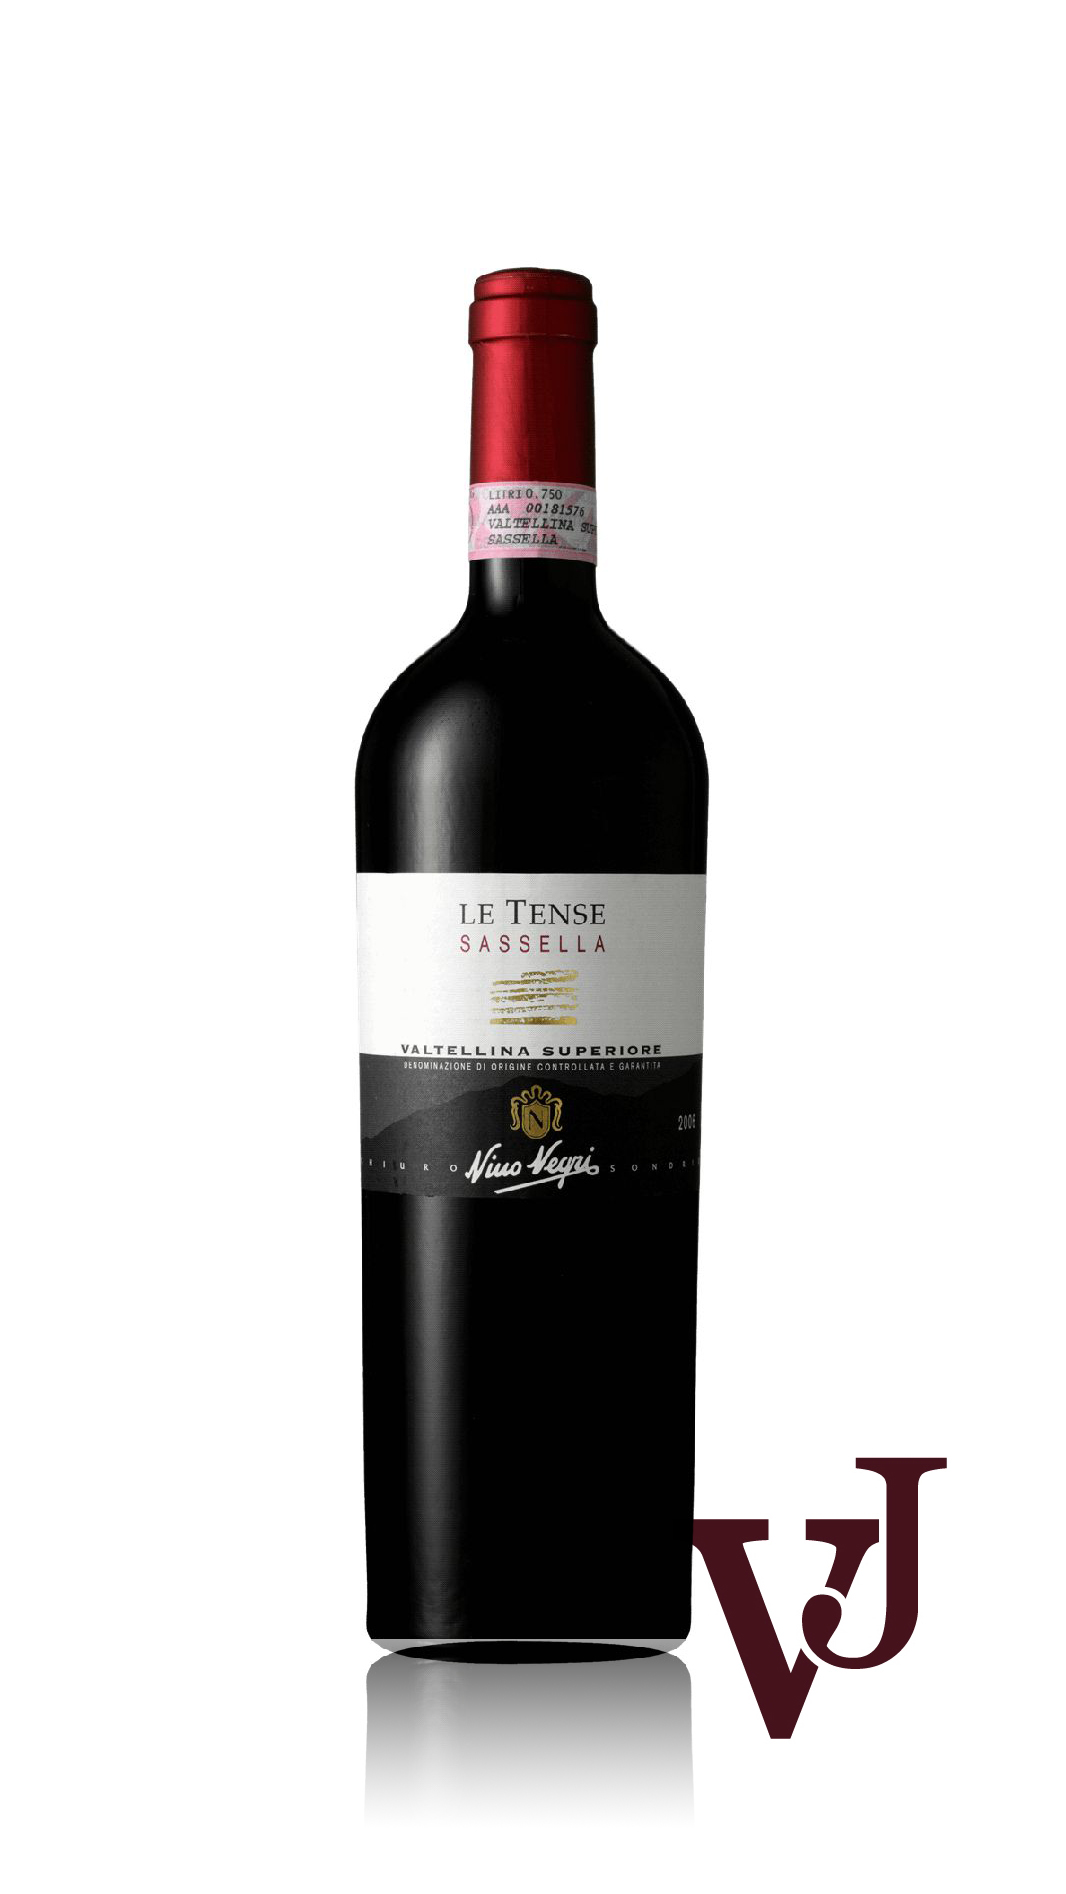 Rött Vin - Le Tense Sassella artikel nummer 3234101 från producenten Nino Negri från området Italien